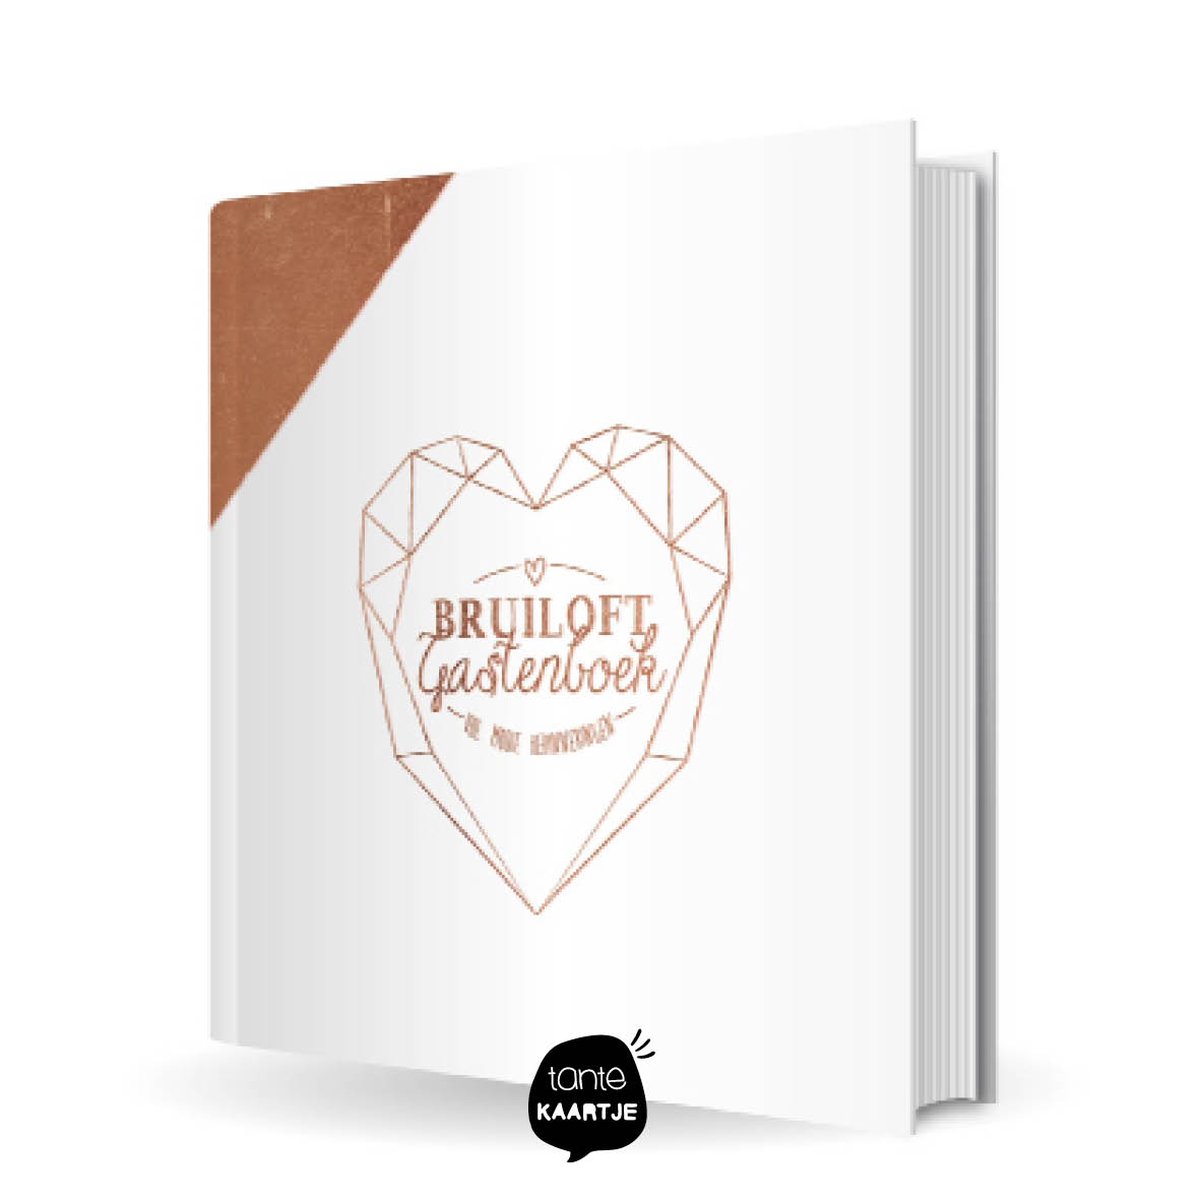 Bruiloft Gastenboek - 44 gasten